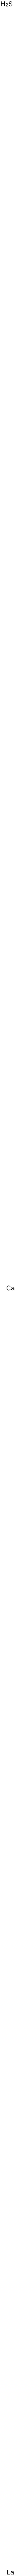 Calciumbis[dithioxolanthanat(1-)]